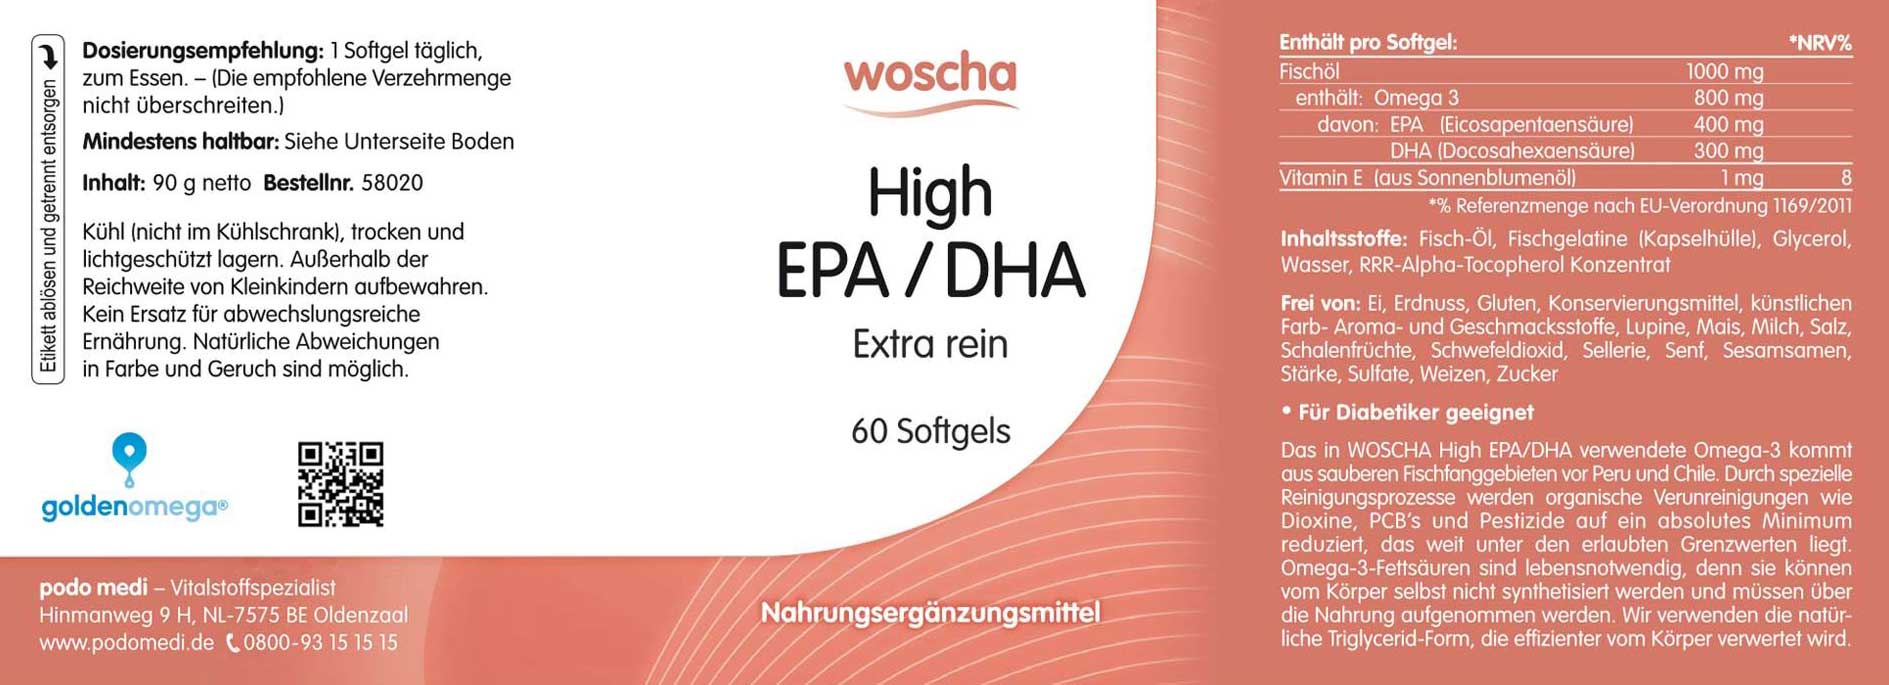 Woscha High EPA DHA von podo medi beinhaltet 60 Softgels Etikett